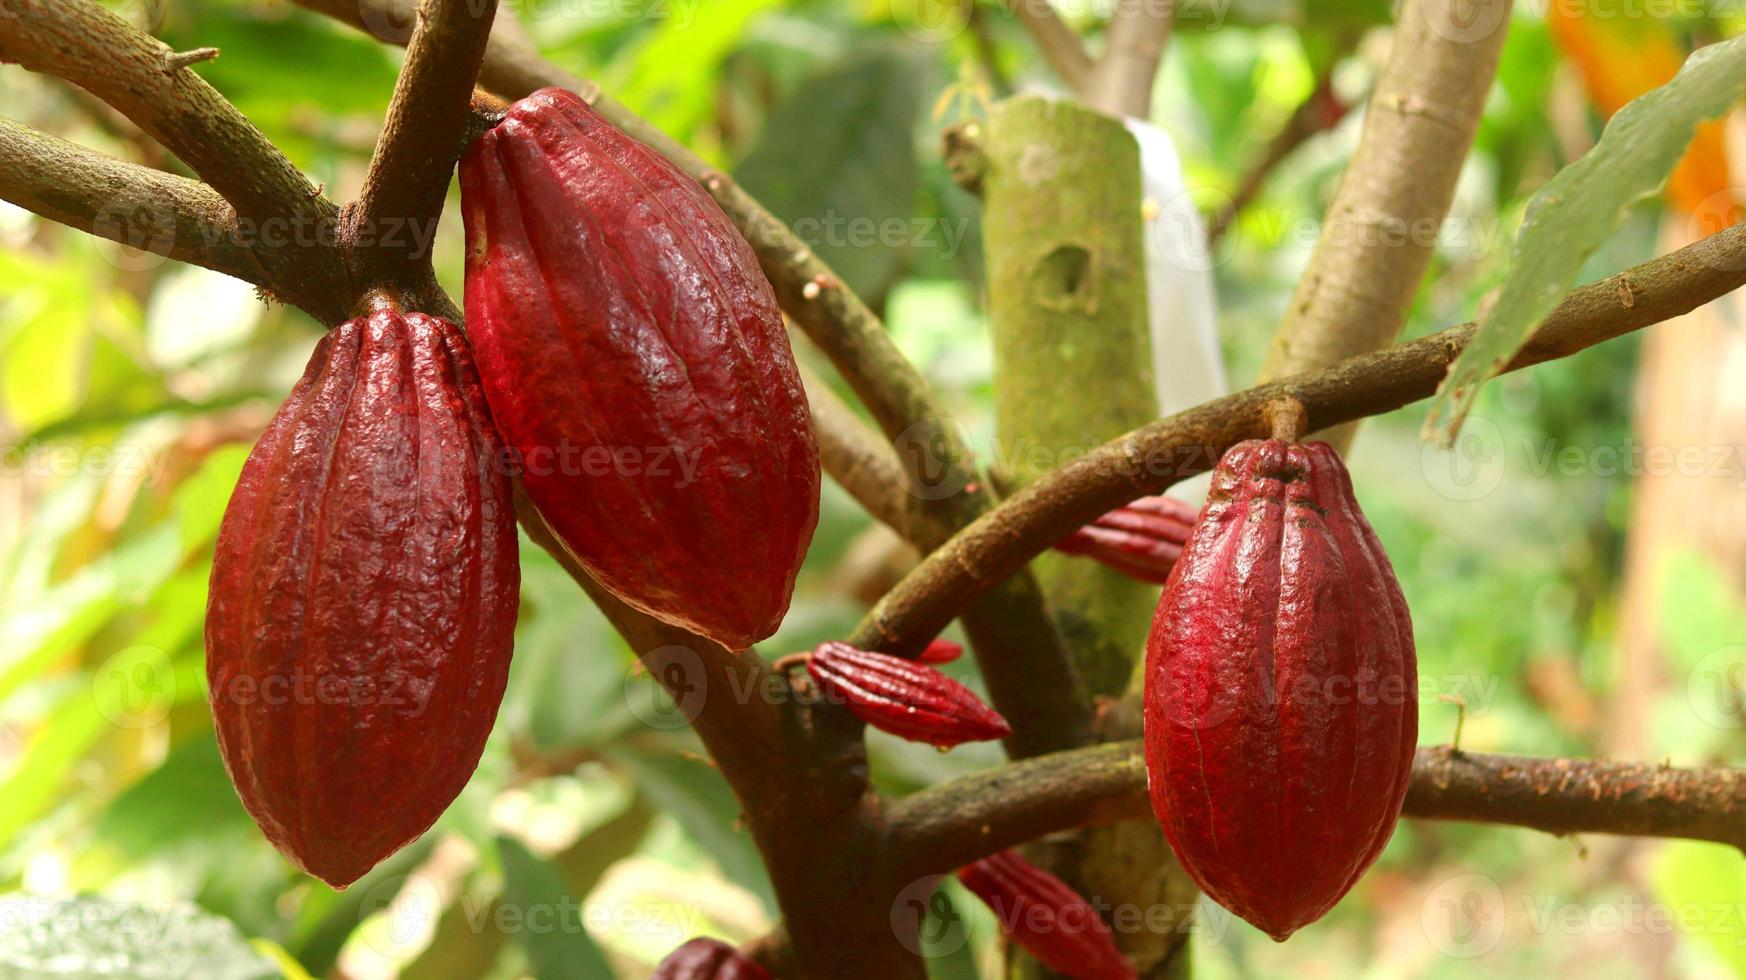 baccello di cacao rosso sull'albero nel campo. cacao o theobroma cacao l. è un albero coltivato in piantagioni originarie del sud america, ma oggi coltivato in varie aree tropicali. Giava, Indonesia. foto